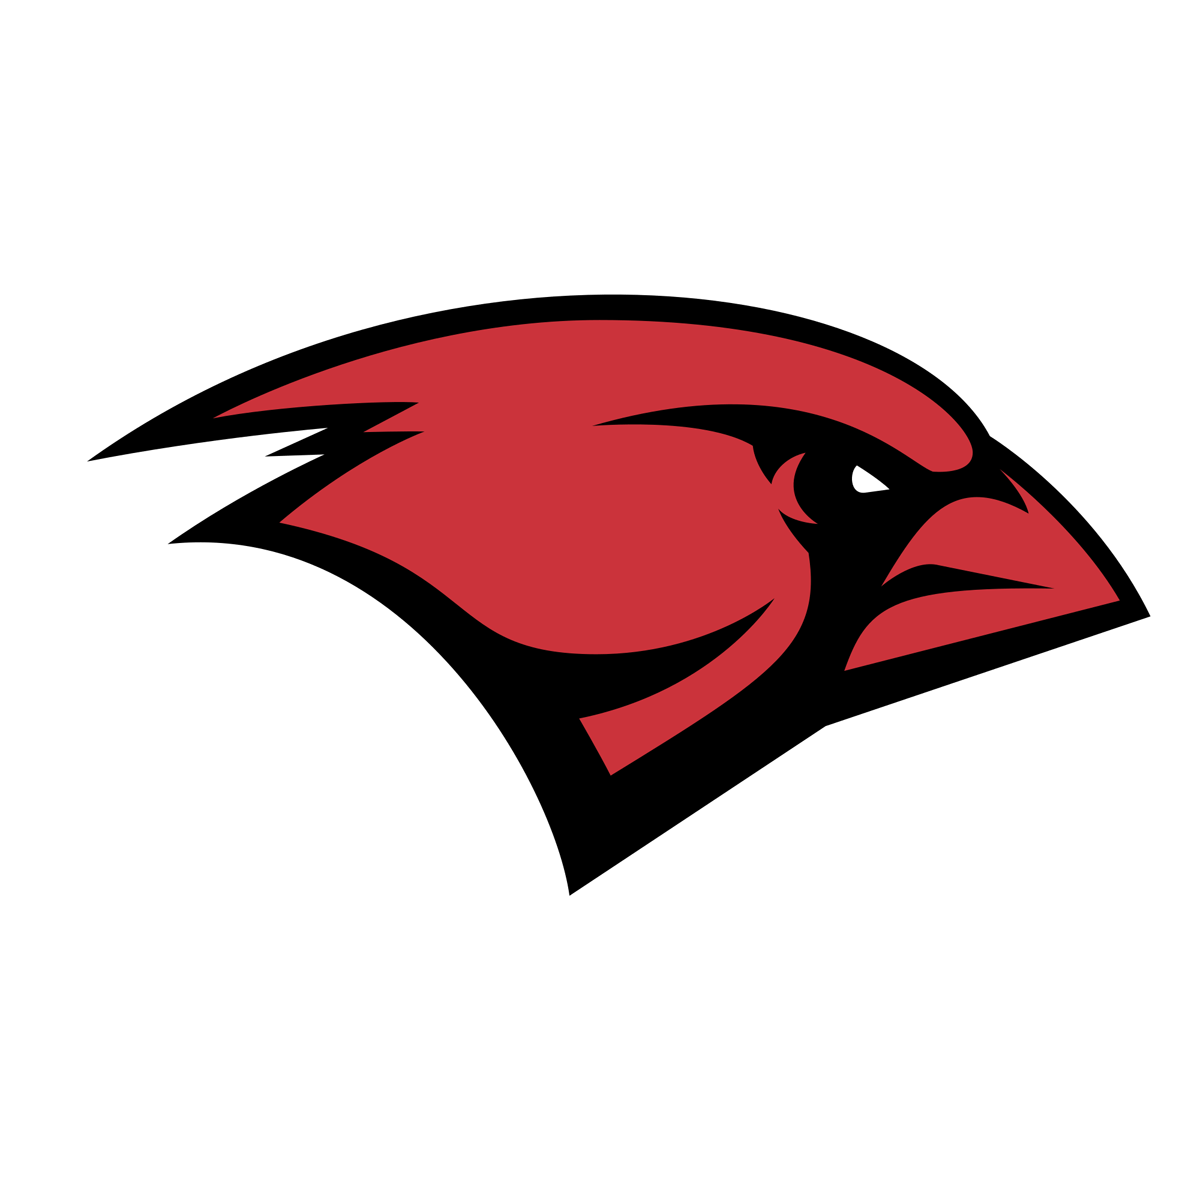 Incarnate Word Cardinals logo PNG